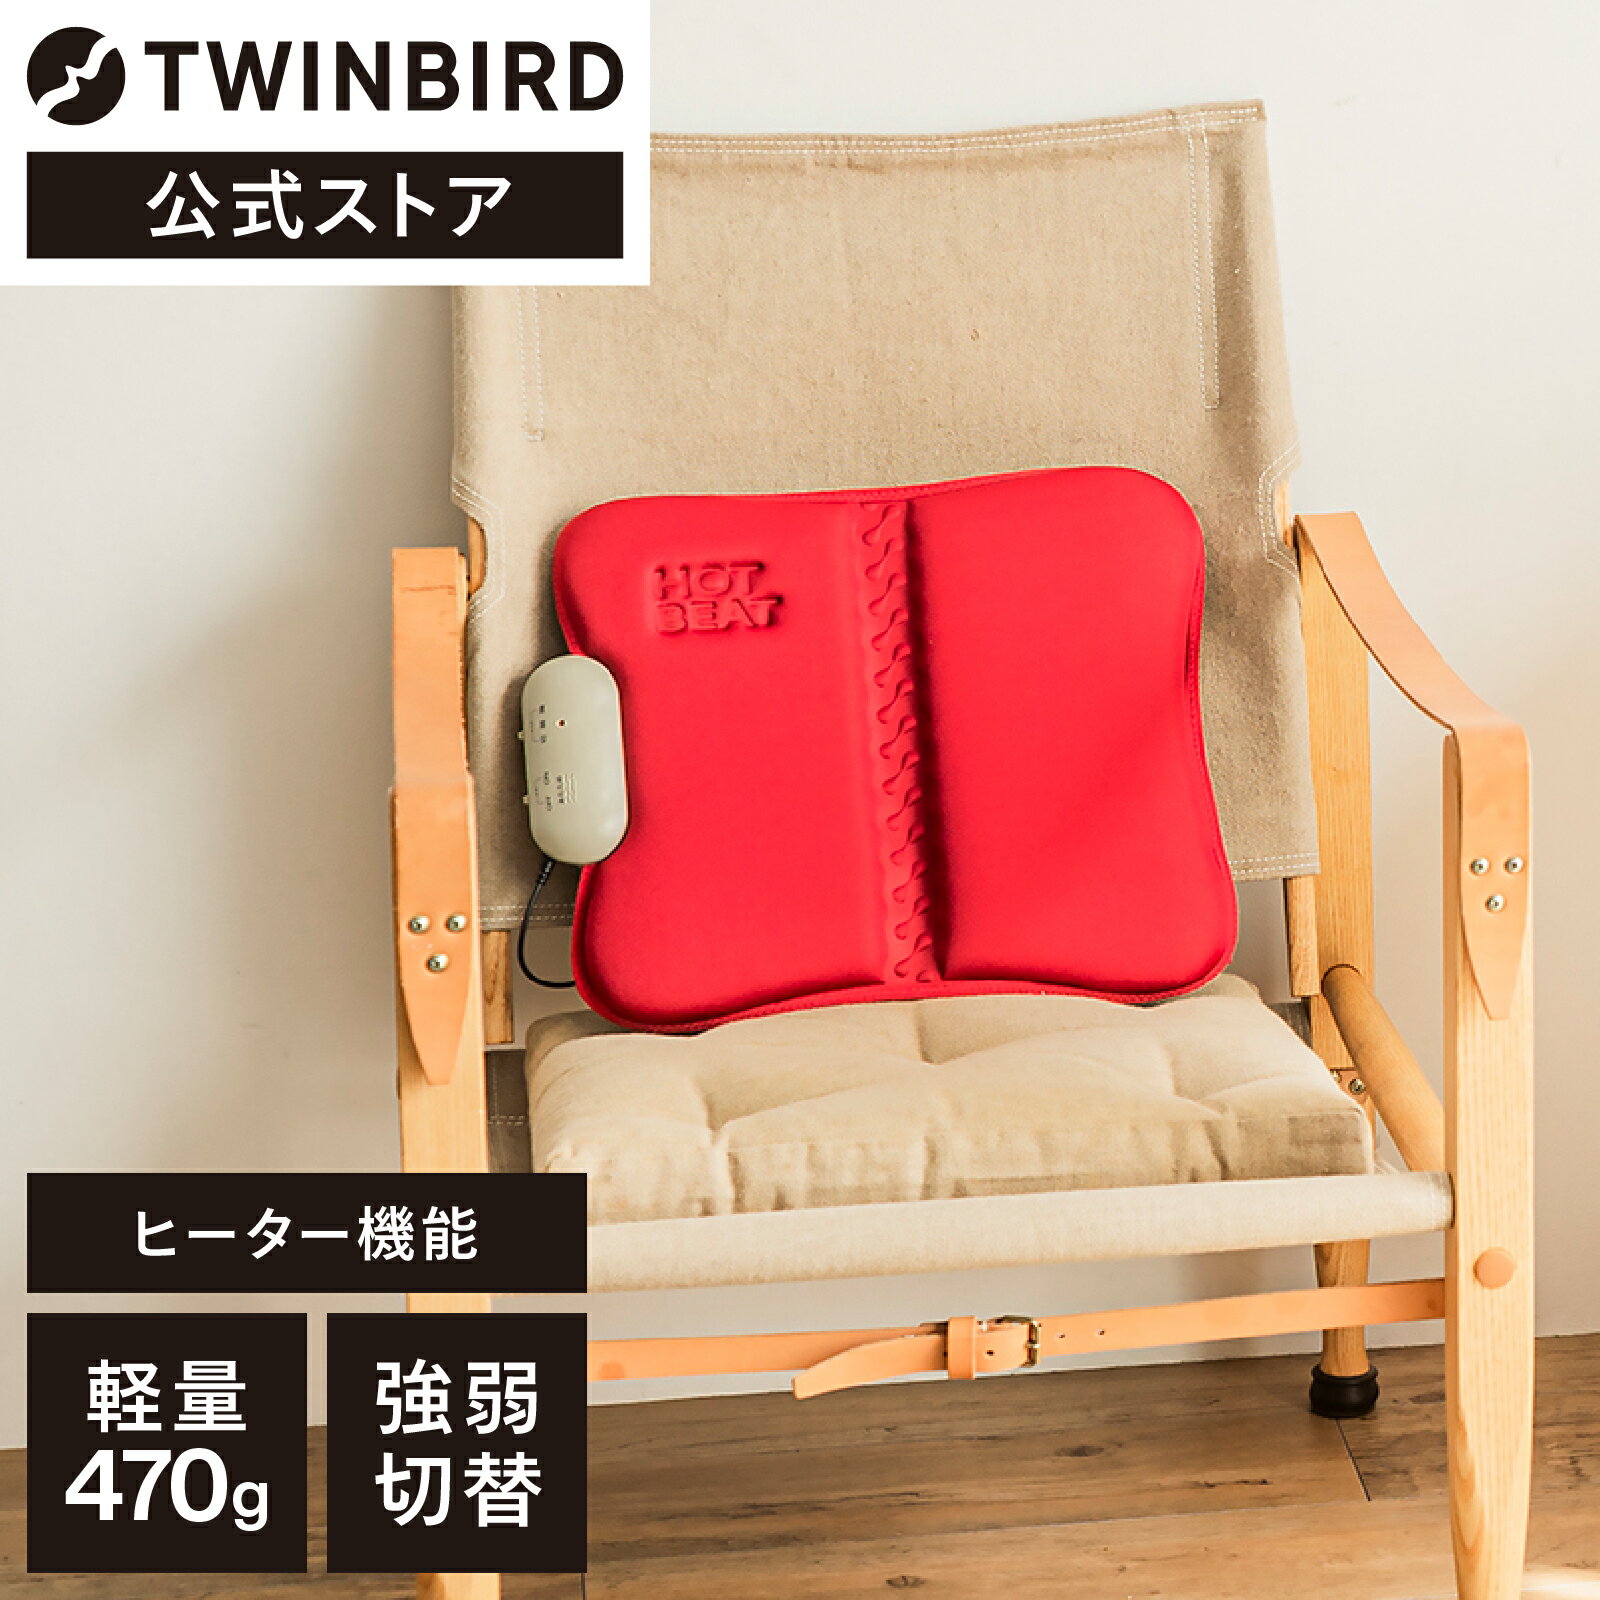 【公式】 EM-2538R ホットシートマッサージャー レッド | ツインバード TWINBIRD マッサージ シート 椅子 ソファ ホット 足